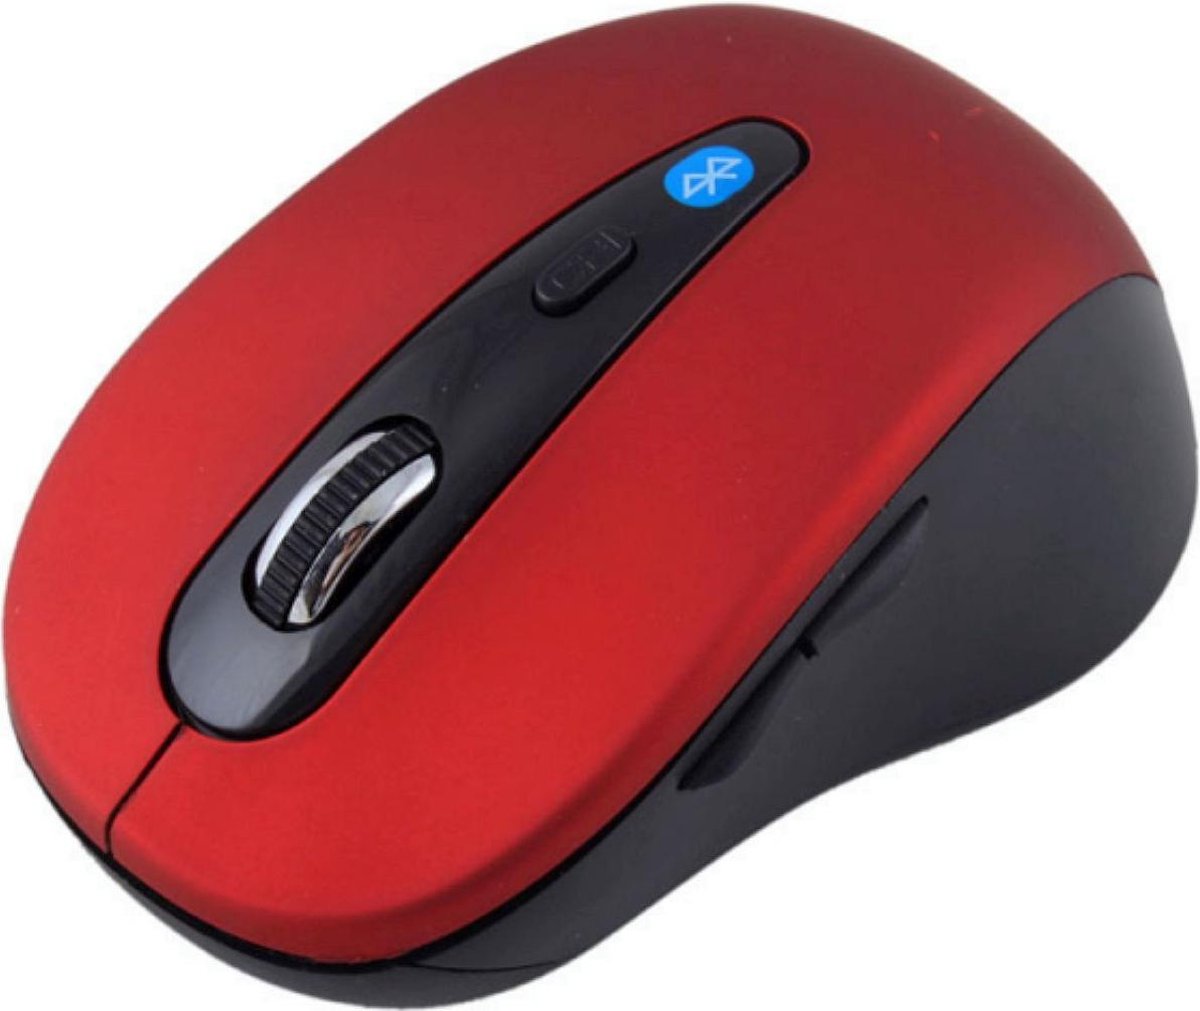 Draadloze muis met Bluetooth: compact, ergonomisch en gebruiksvriendelijk voor Windows Mac OS rood